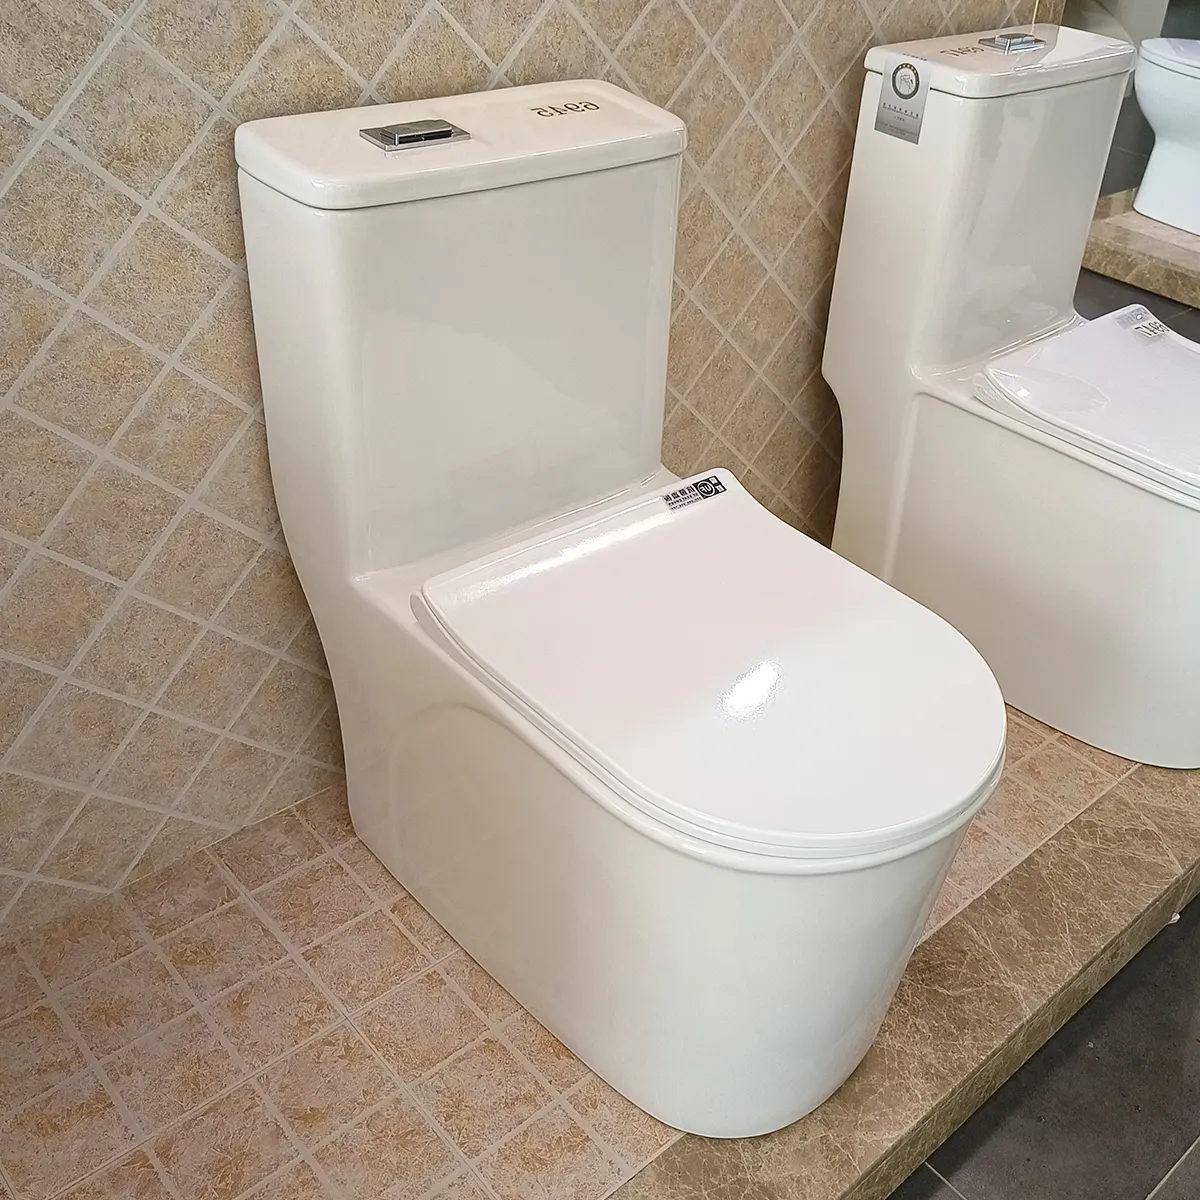 مرحاض آسيوي من قطعة واحدة يحتوي على وعاء مرحاض بشطف مزدوج ومرحاض من السيراميك باللون السيفوني